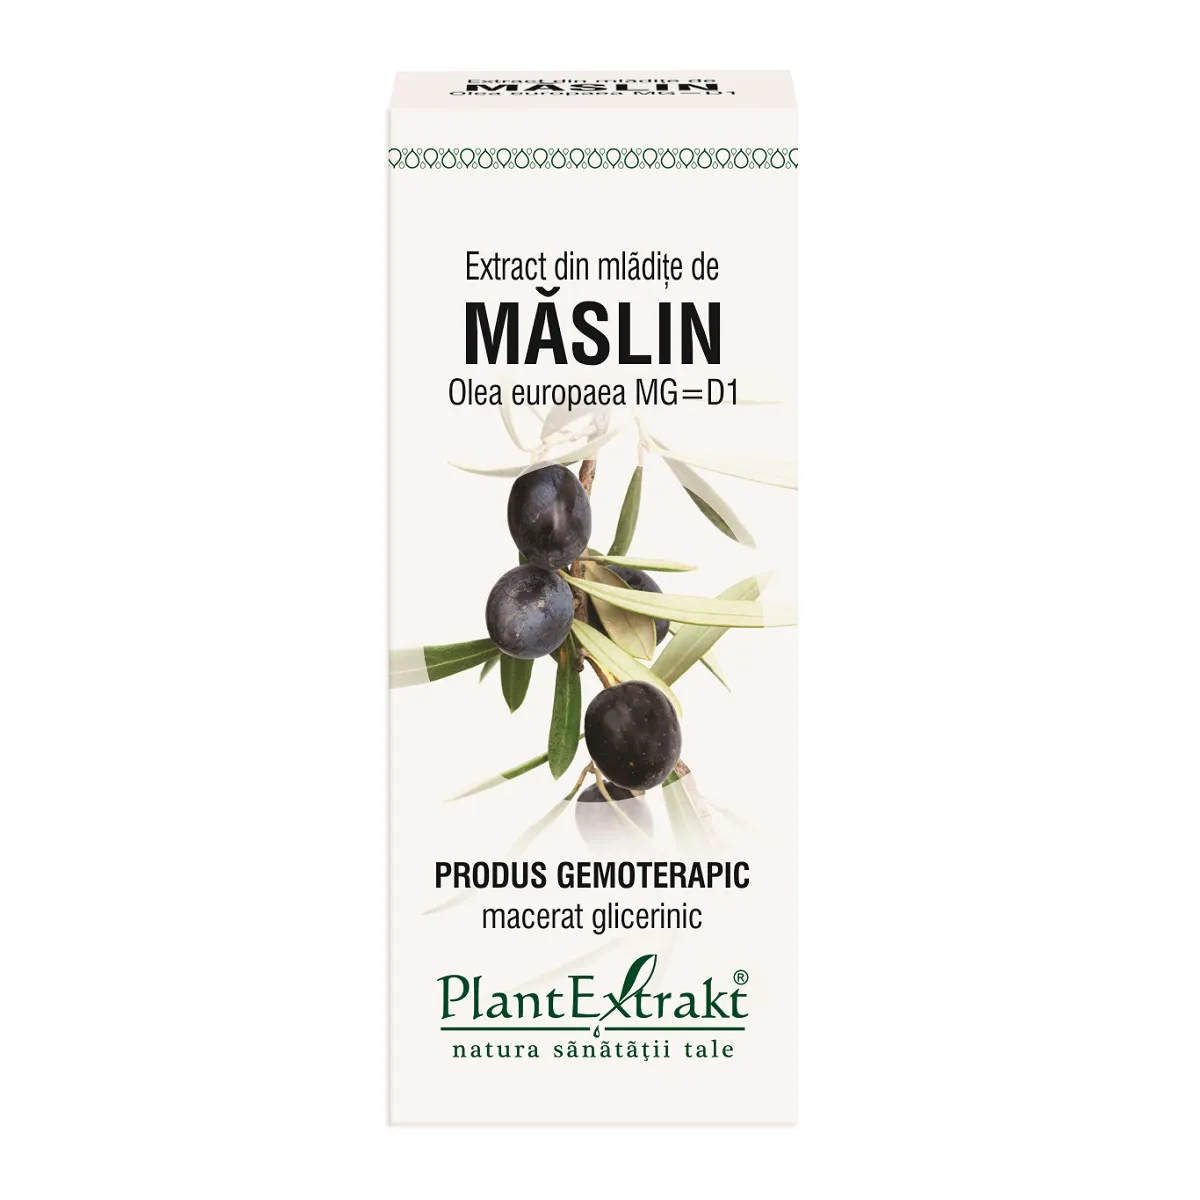 Extract din mladite de Maslin, 50ml, Plantextrakt